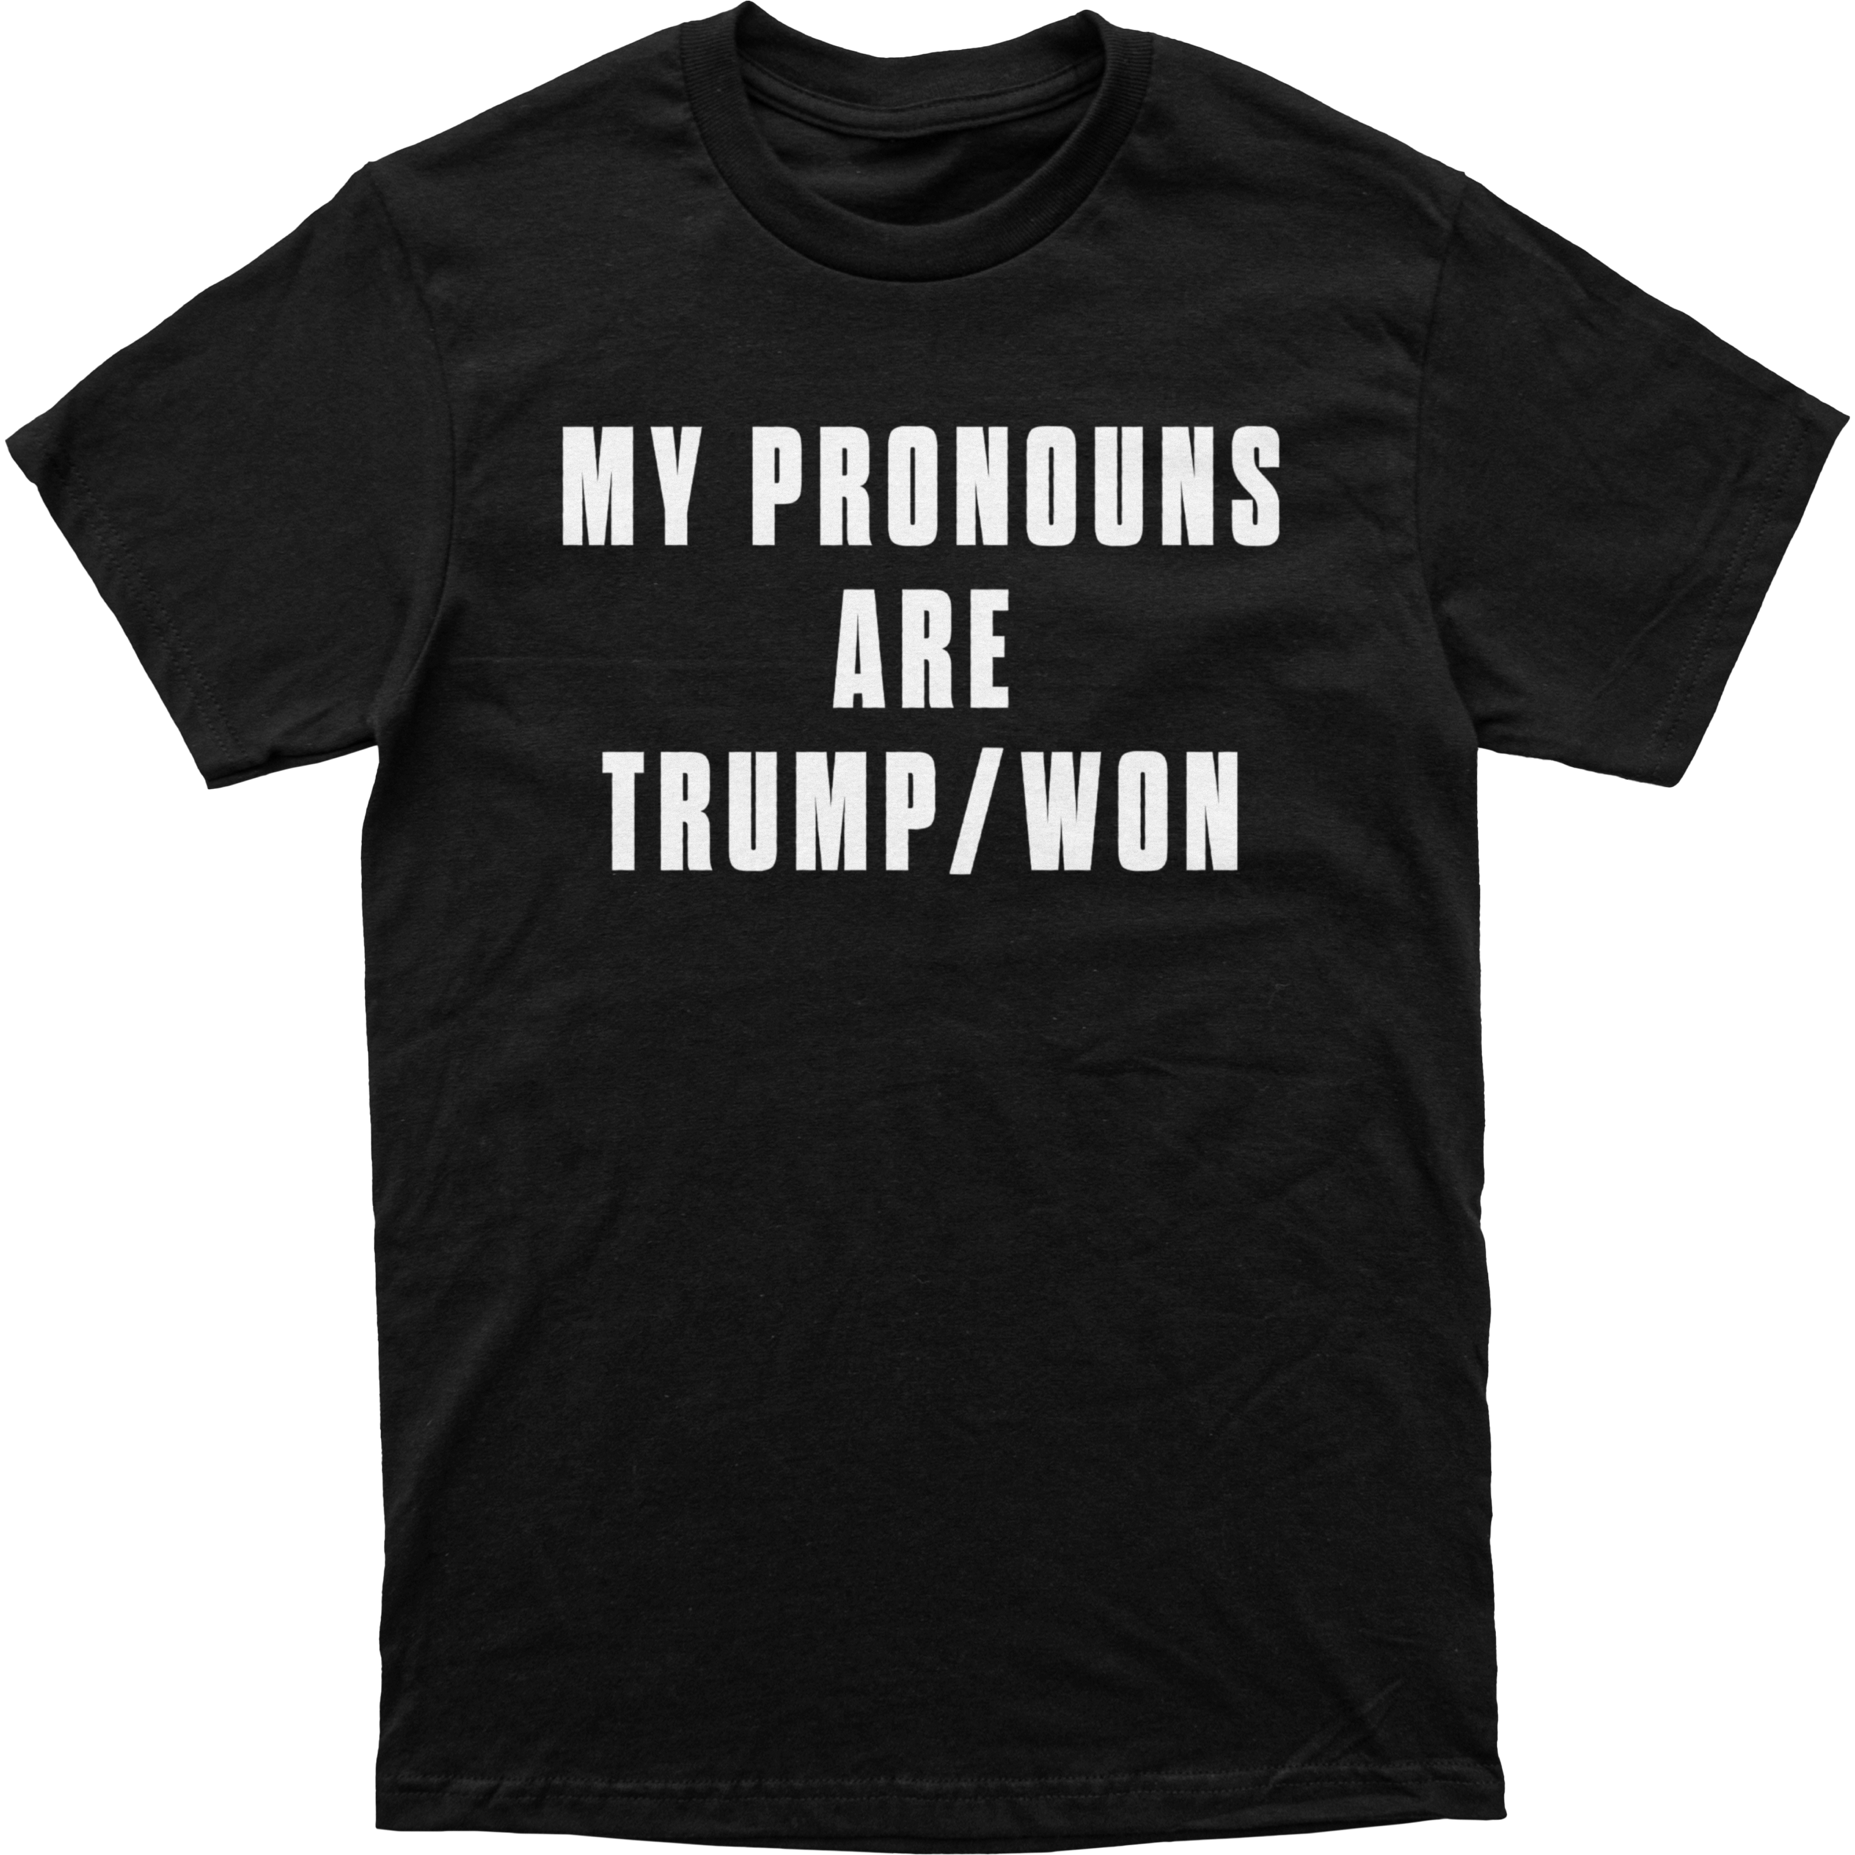 Trump/Won T-Shirt